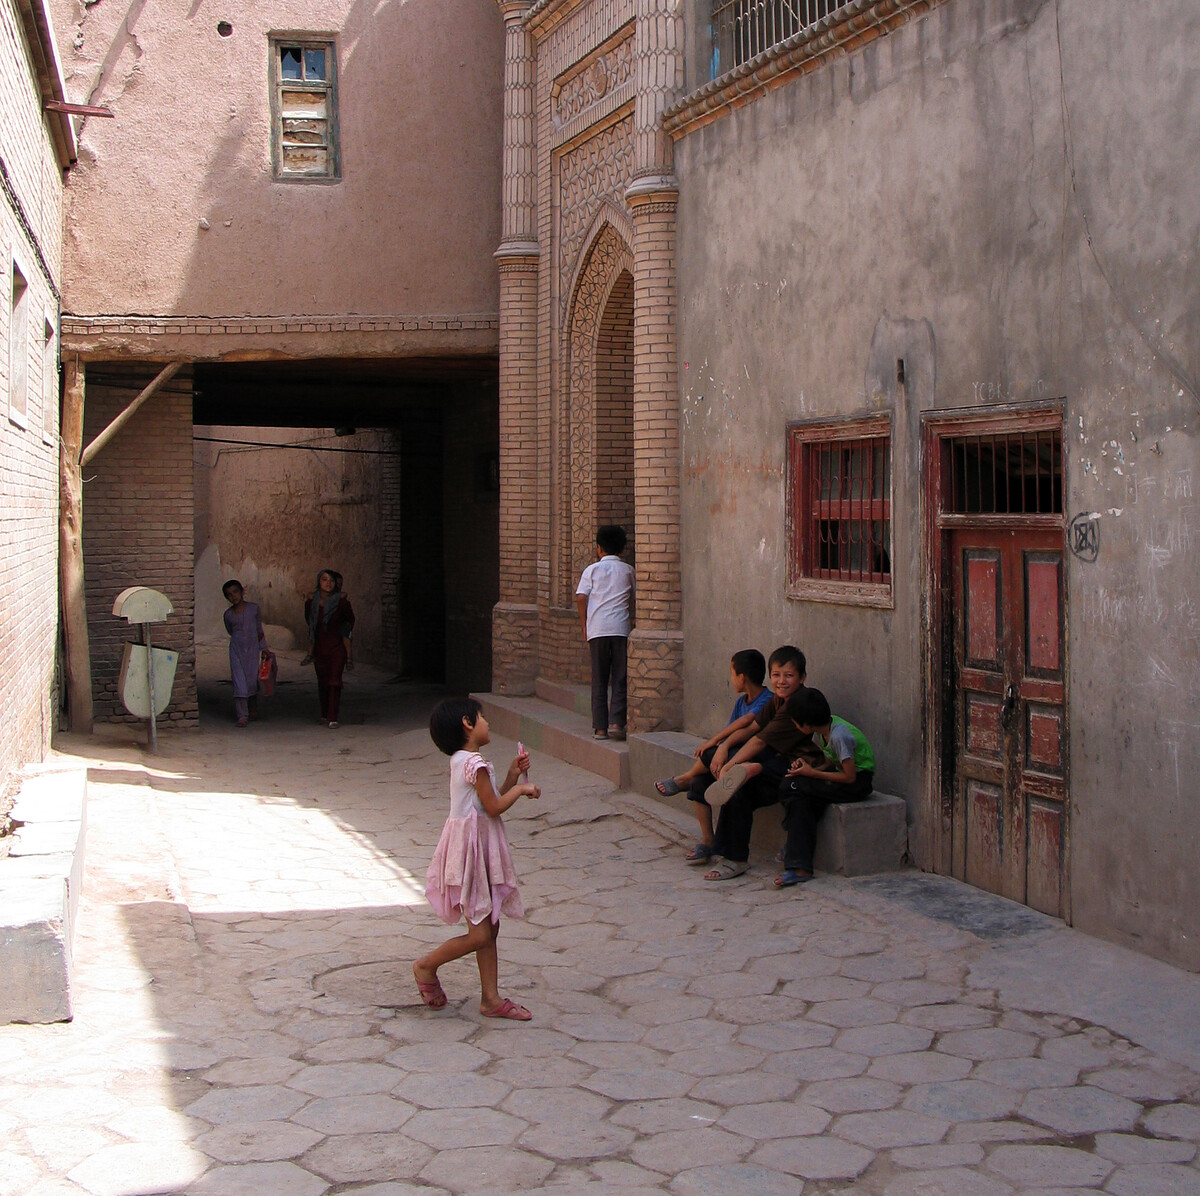 Alleys in Kashgar’s Old Quarter